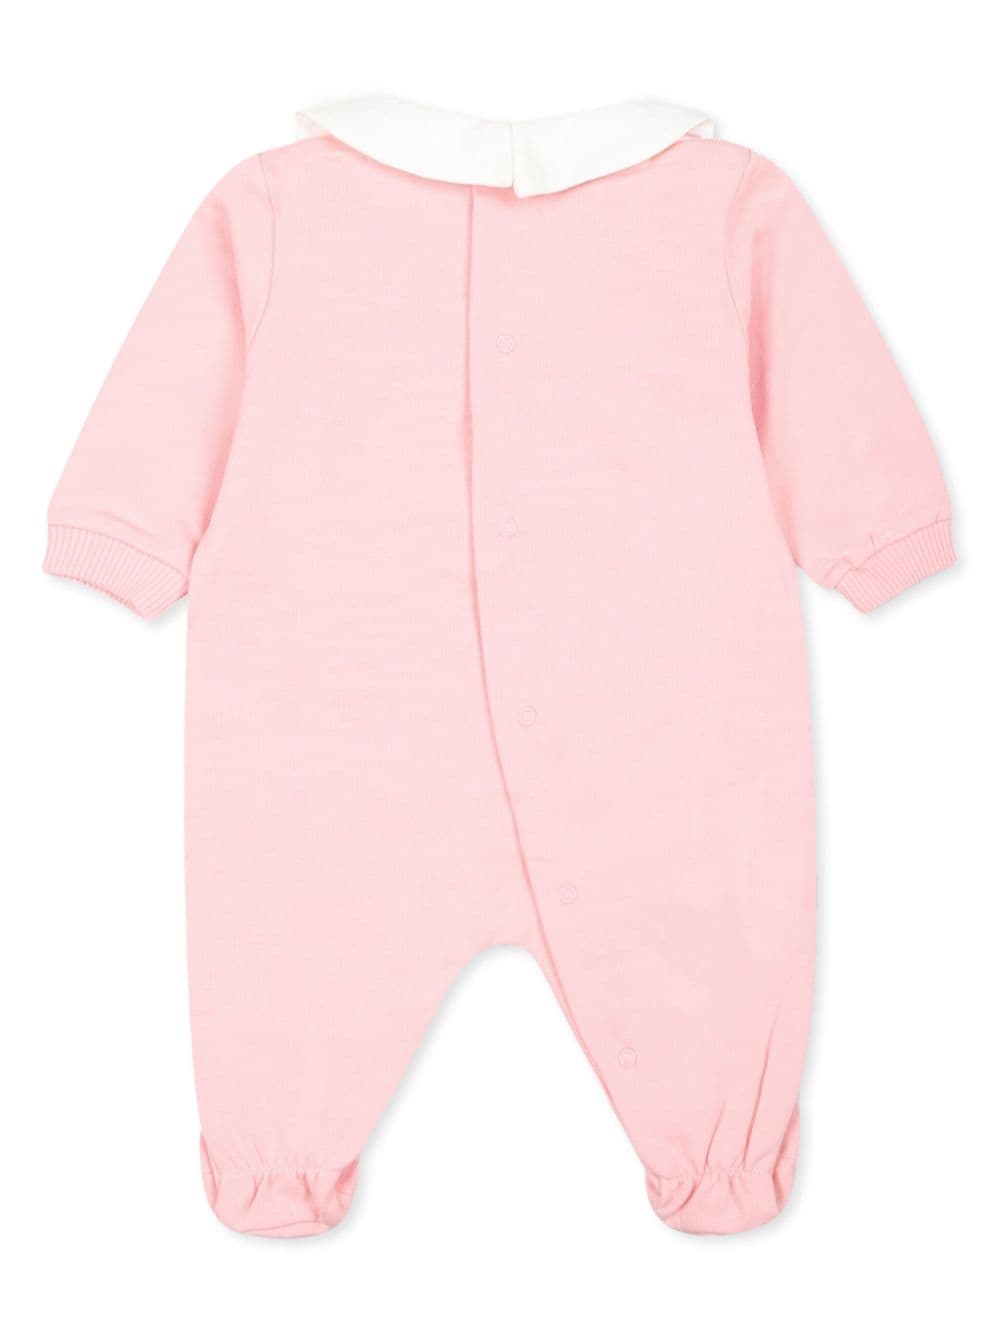 Tutina per neonata in cotone rosa chiaro